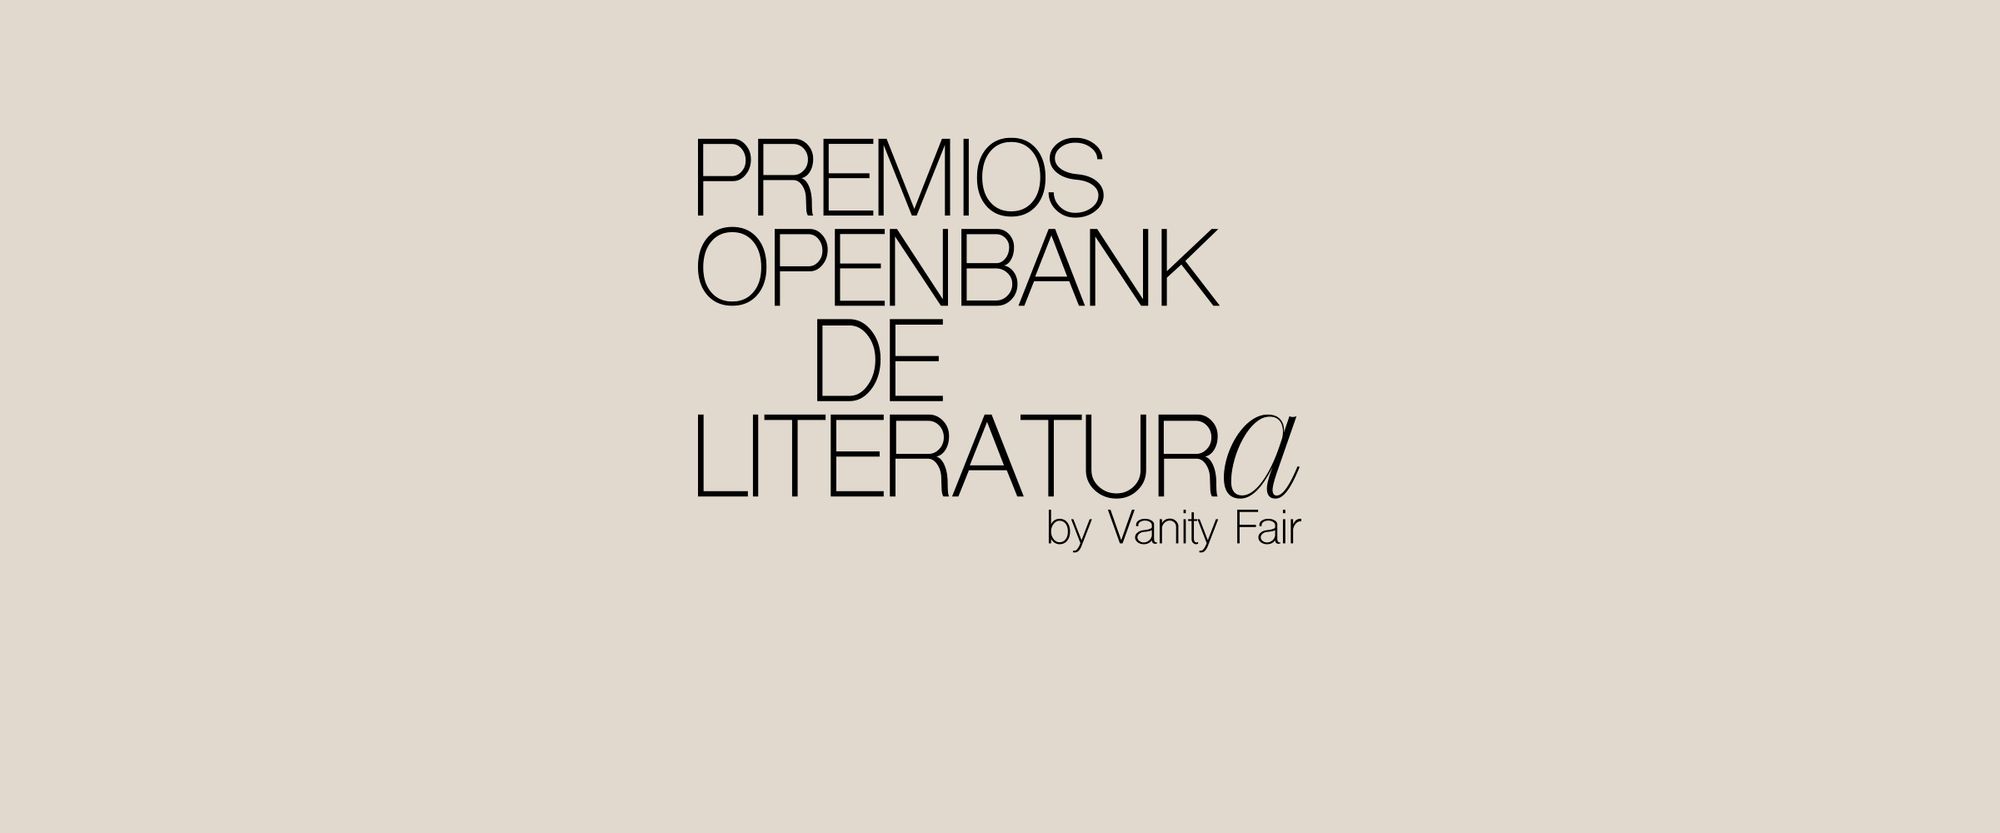 Así fue la 2ª edición de los Premios Openbank de Literatura by Vanity Fair